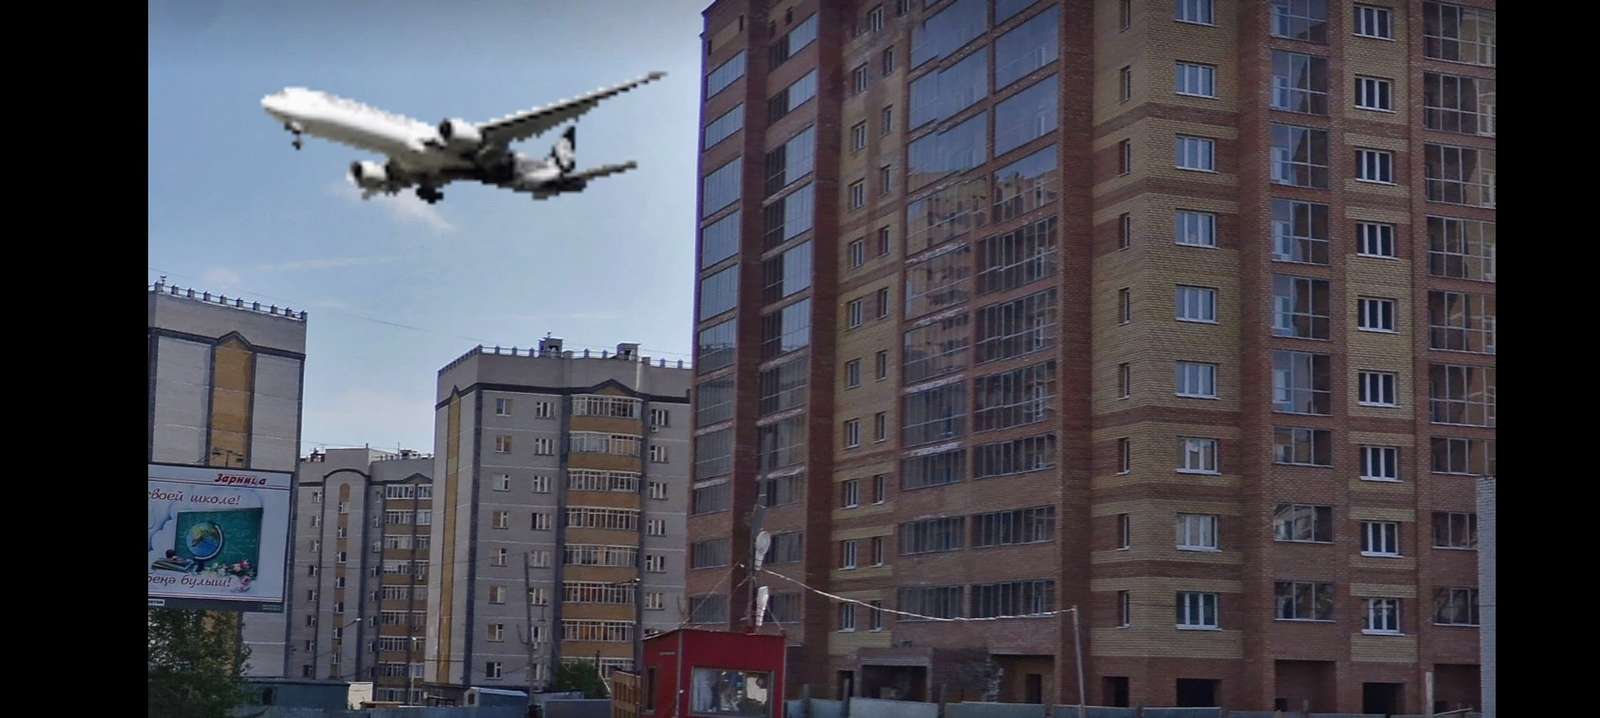 Kazan Noksinsky Descent Repülőgép Azino-2 felszállás útra online puzzle